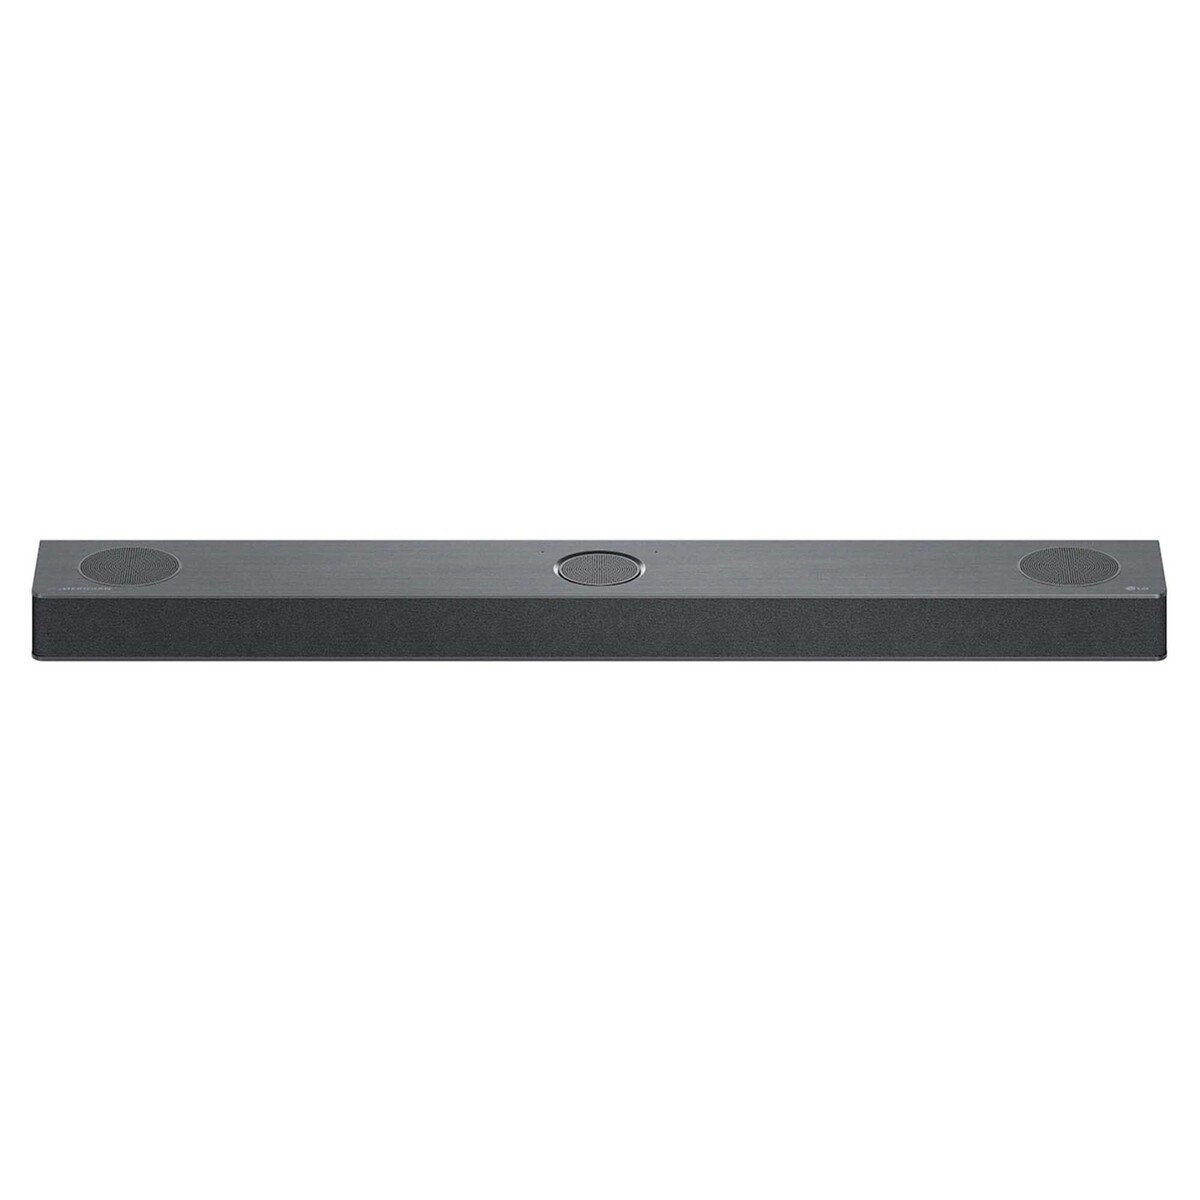 LG 5.1.3 ch Sound Bar with Dolby Atmos, 620 W, Black, S80QR